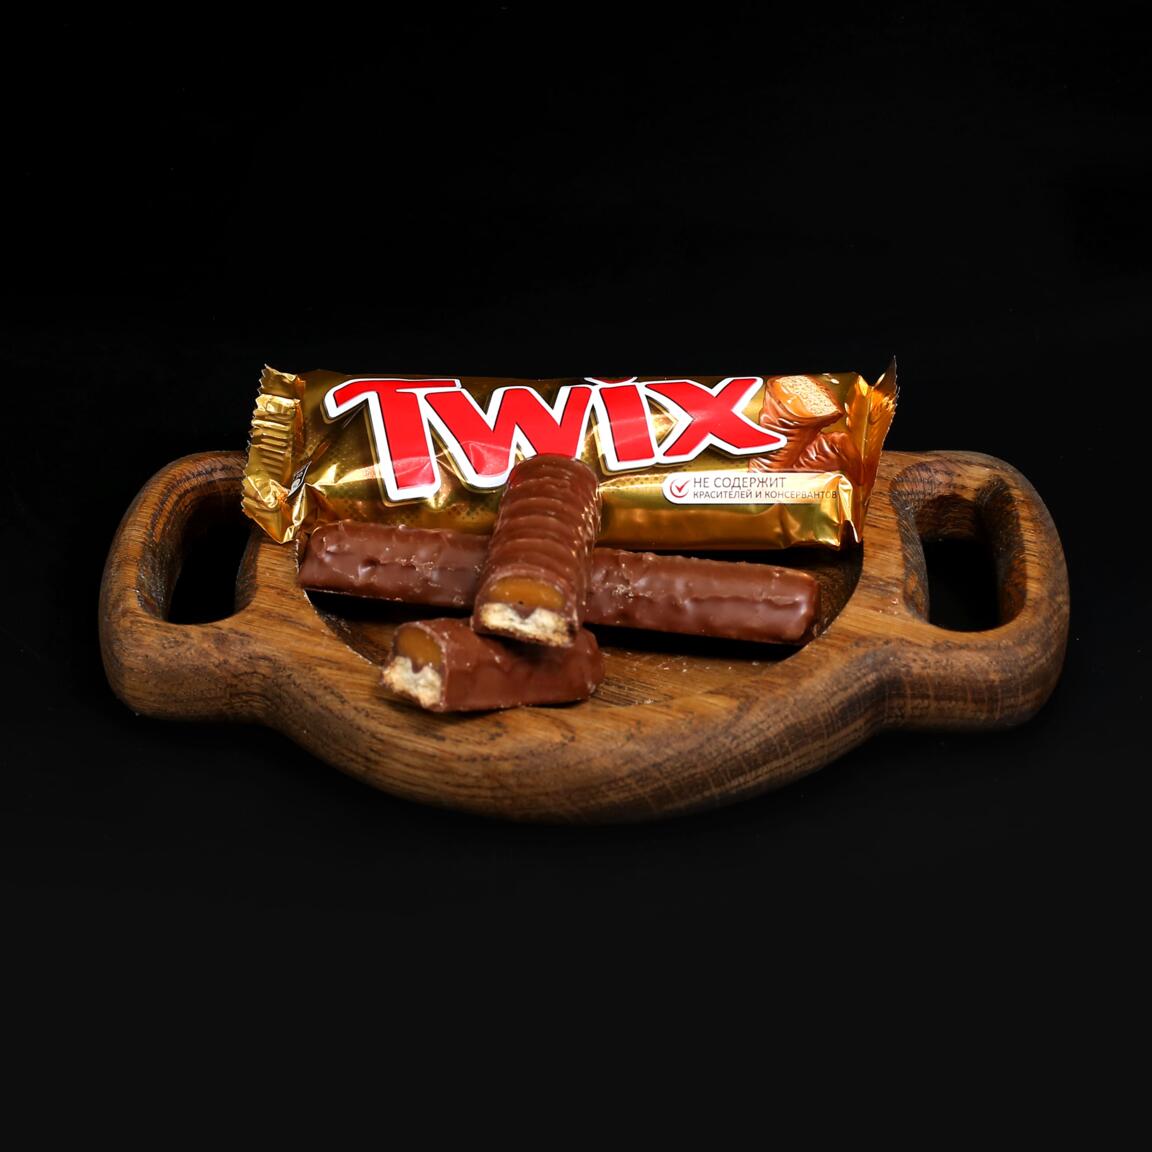 Шоколадный батончик Twix